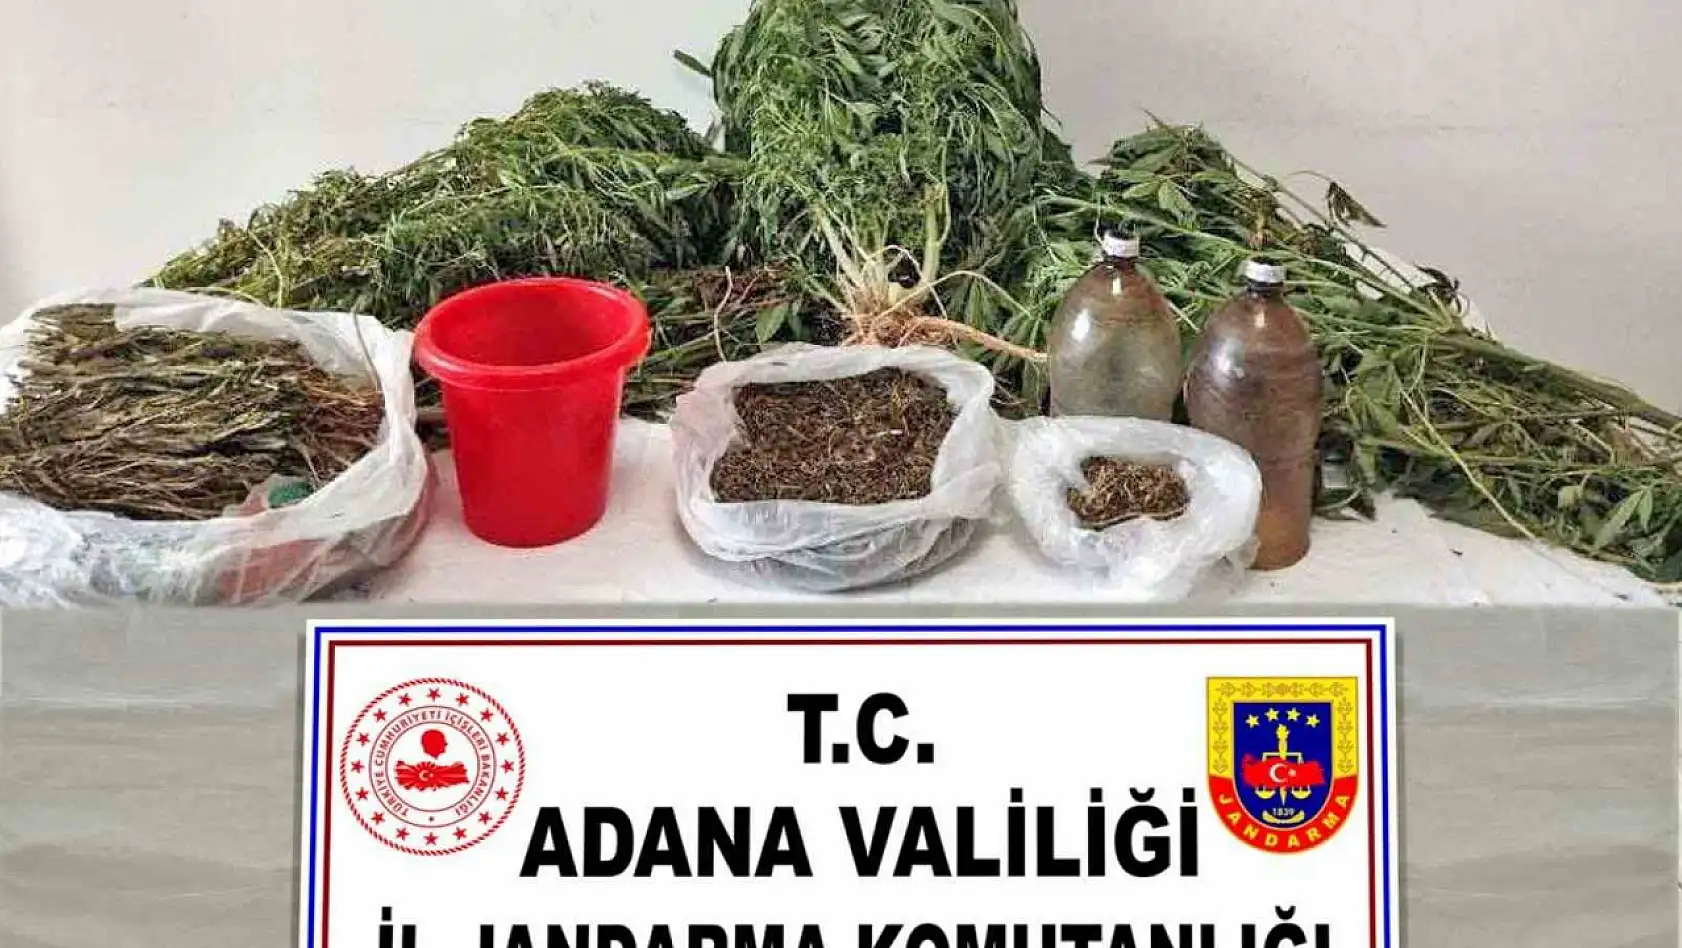 Adana'da uyuşturucu ile mücadele, 1 şüpheli yakalandı